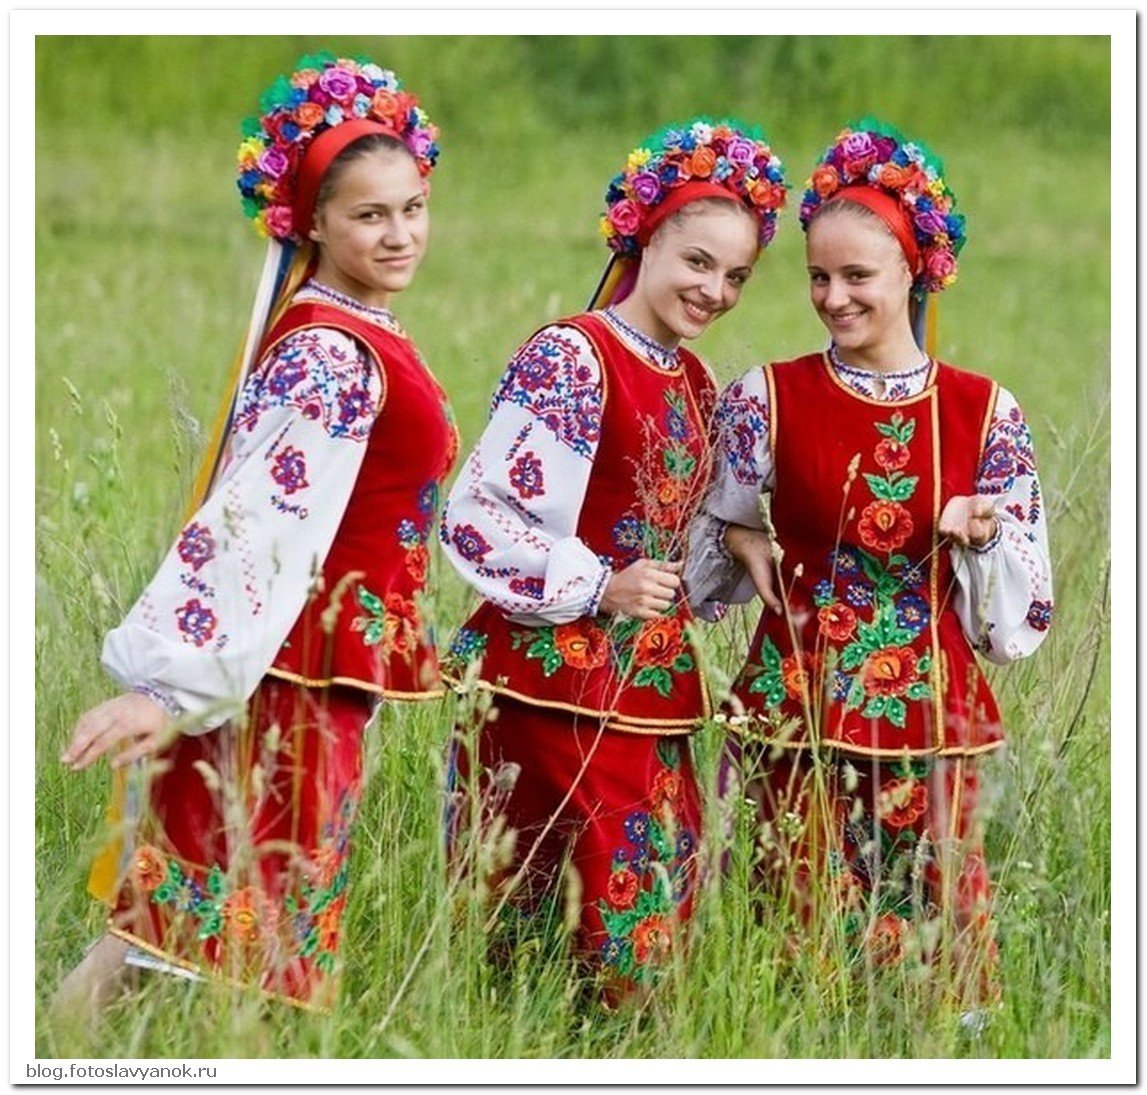 1 национальный украины. Украинский костюм. Наряд украинцев. Народный костюм Украины. Украинский костюм женский.